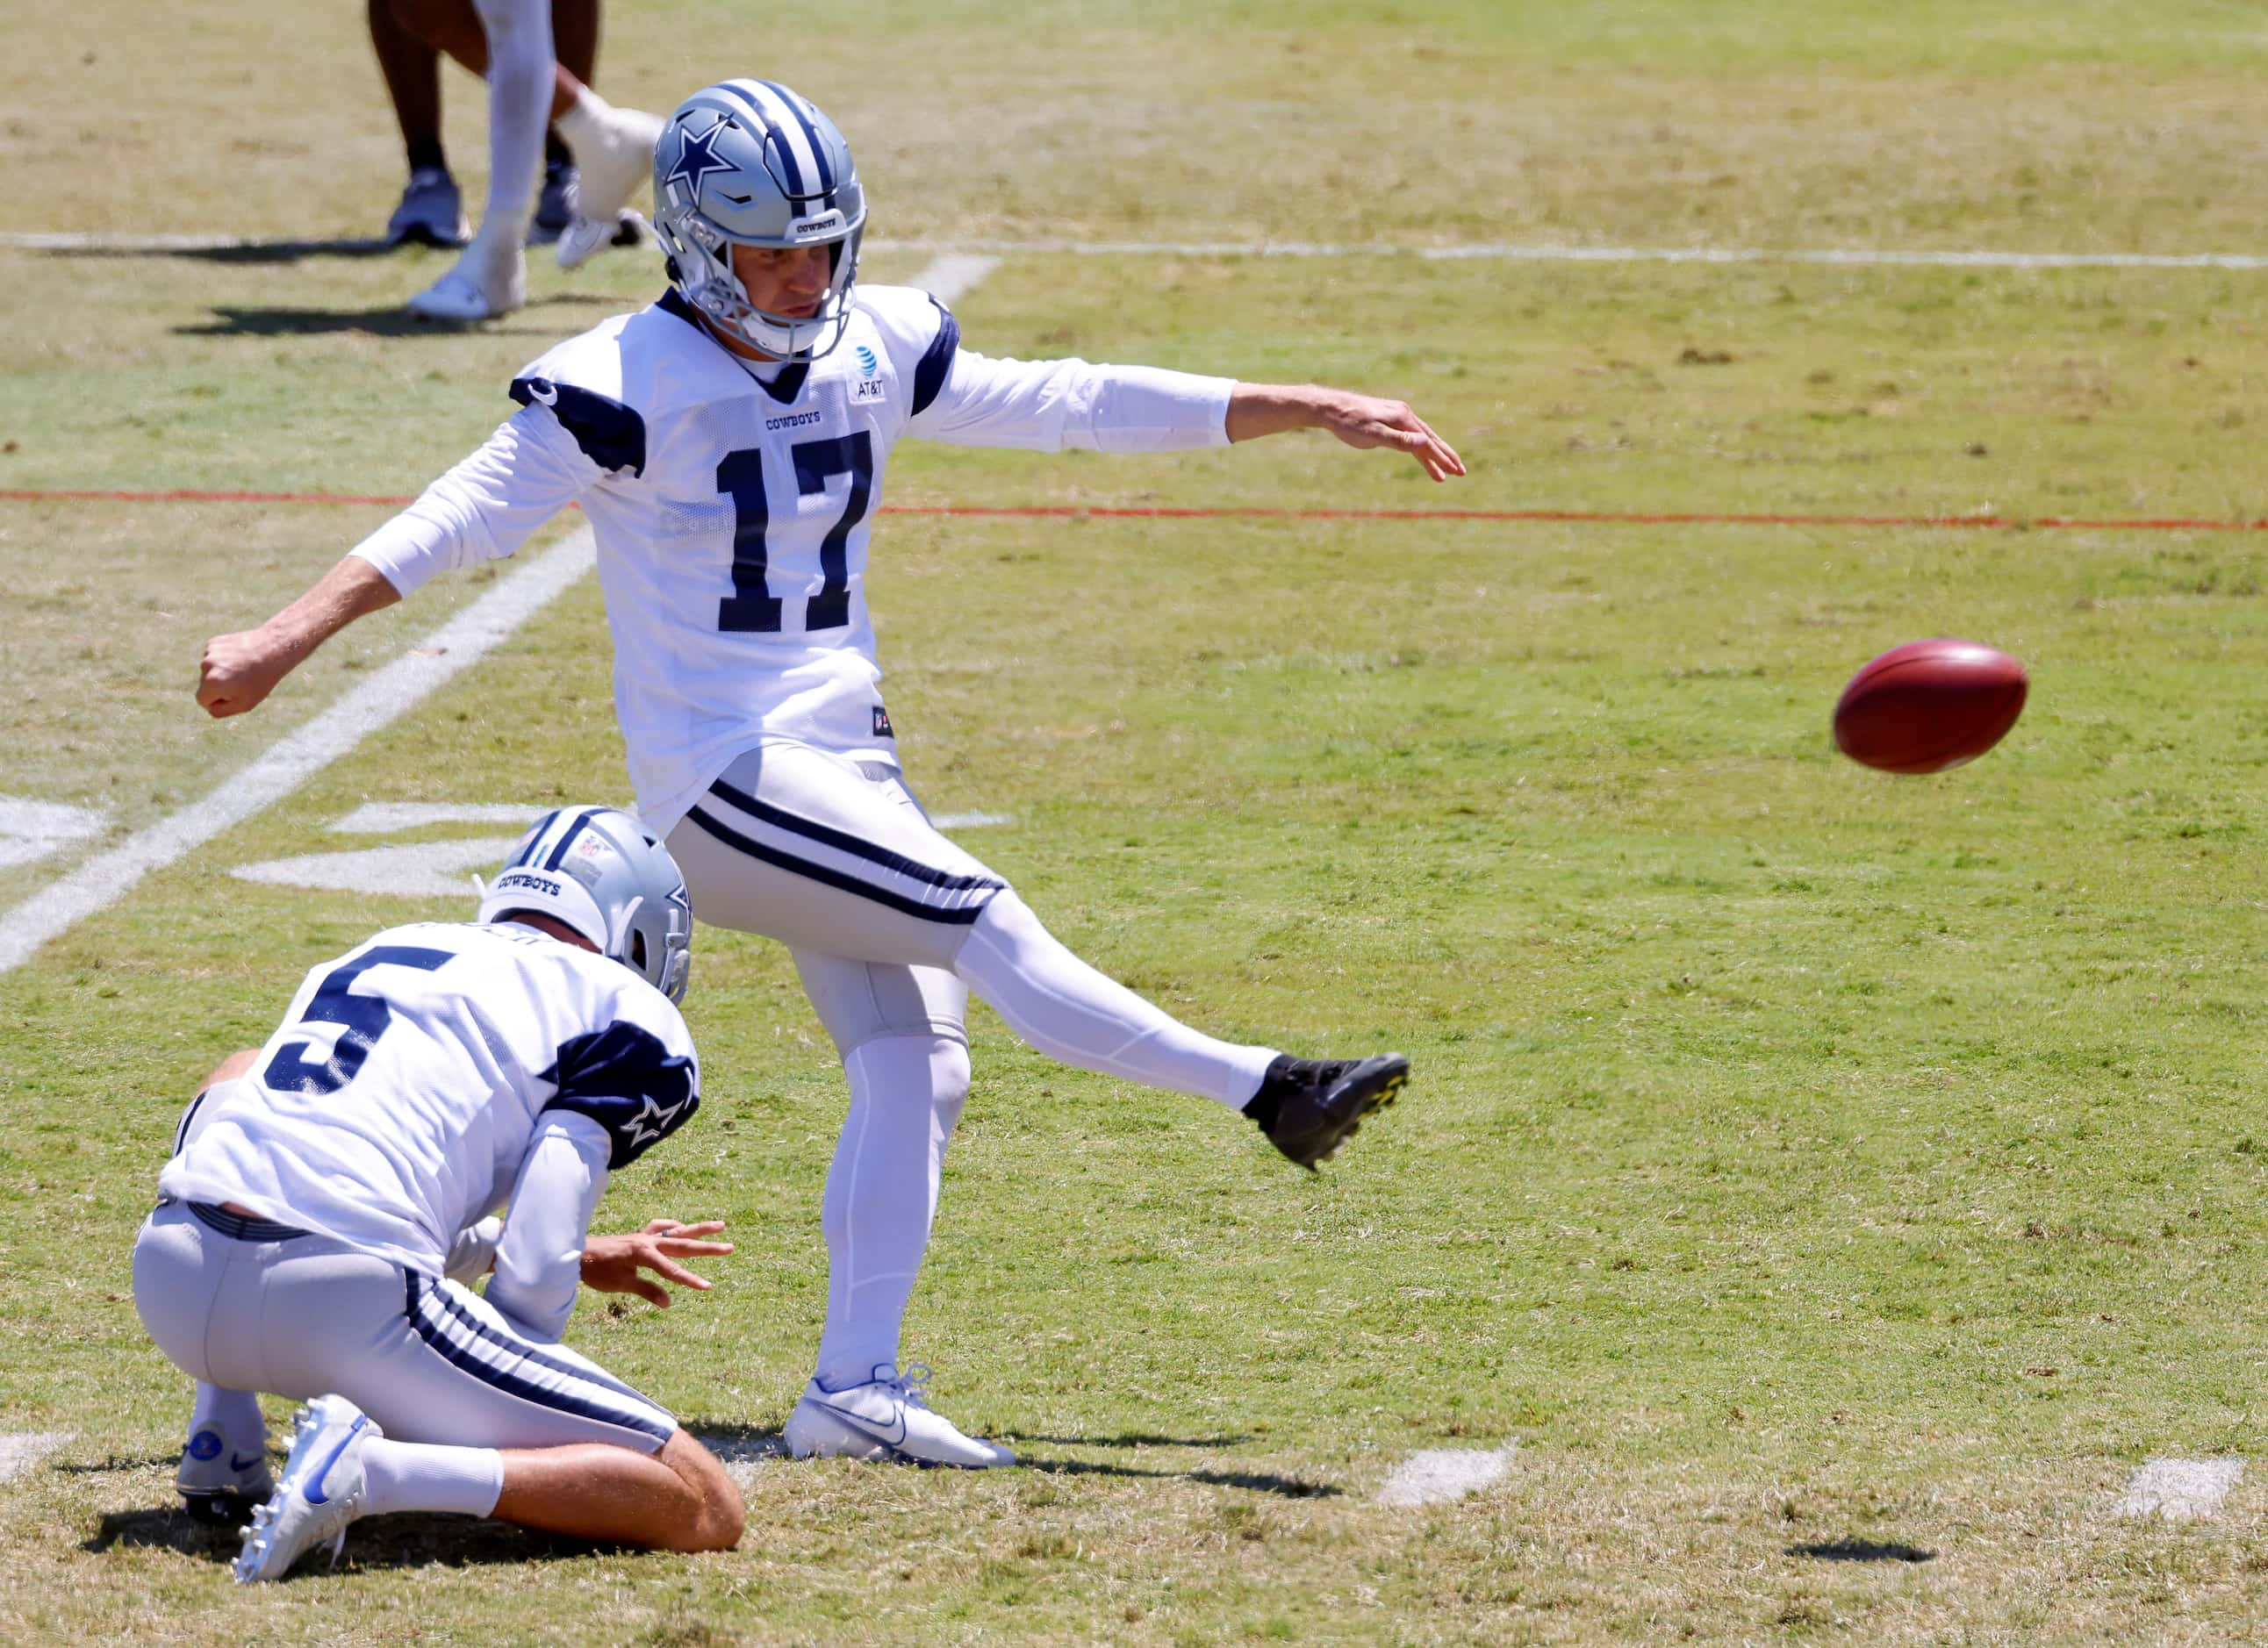 Dallas Cowboys place kicker Brandon Aubrey (17) kicks a field goal as the offense faced the...